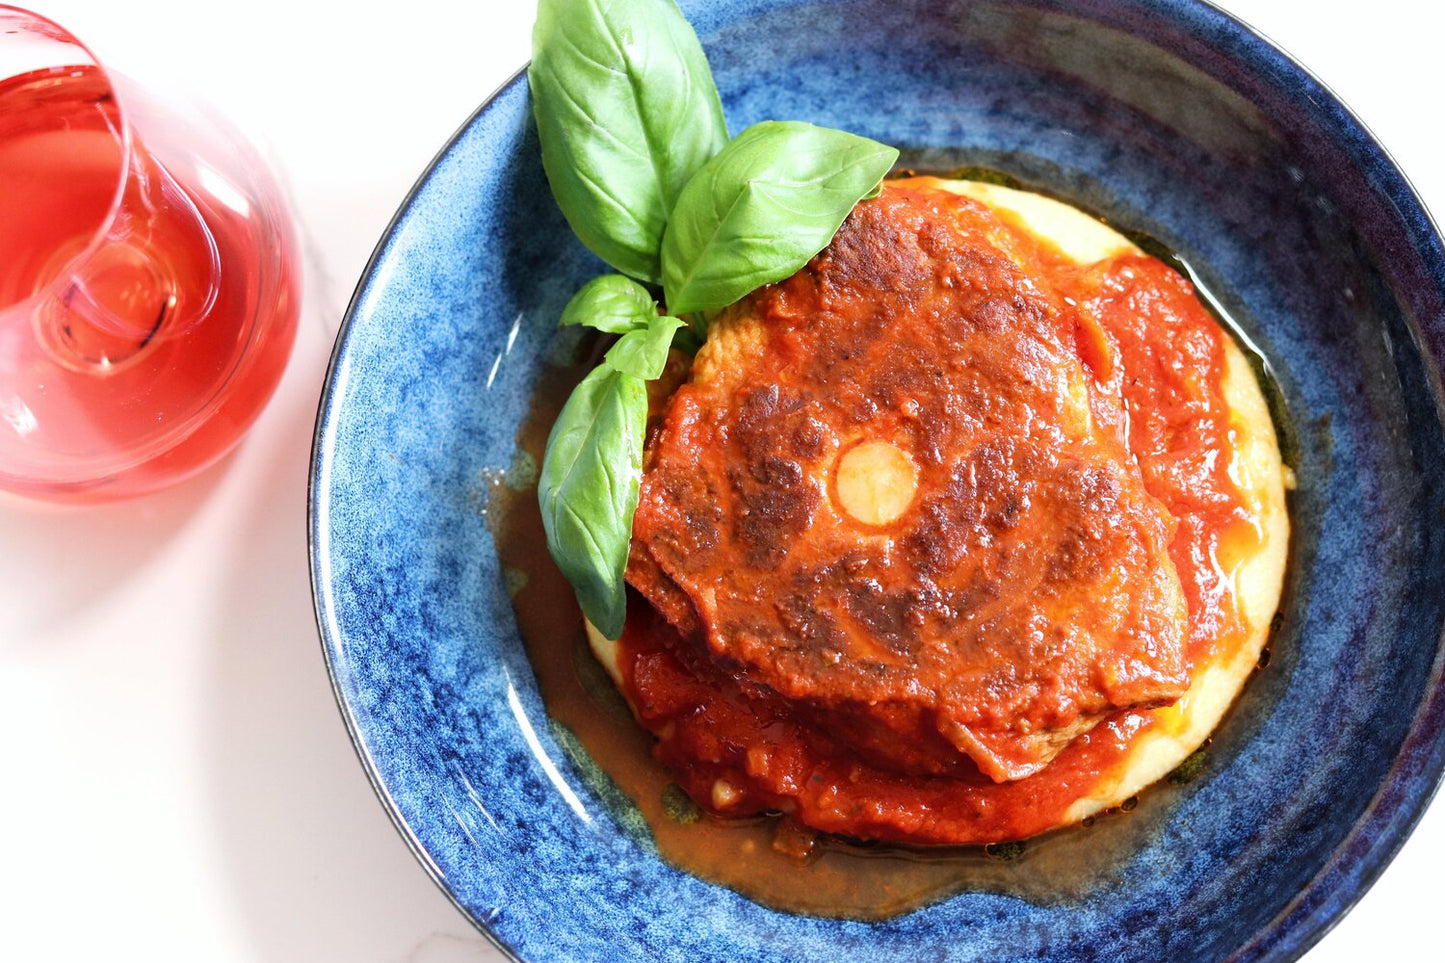 Succulent "Osso buco" Braised in rich Italian tomato sauce